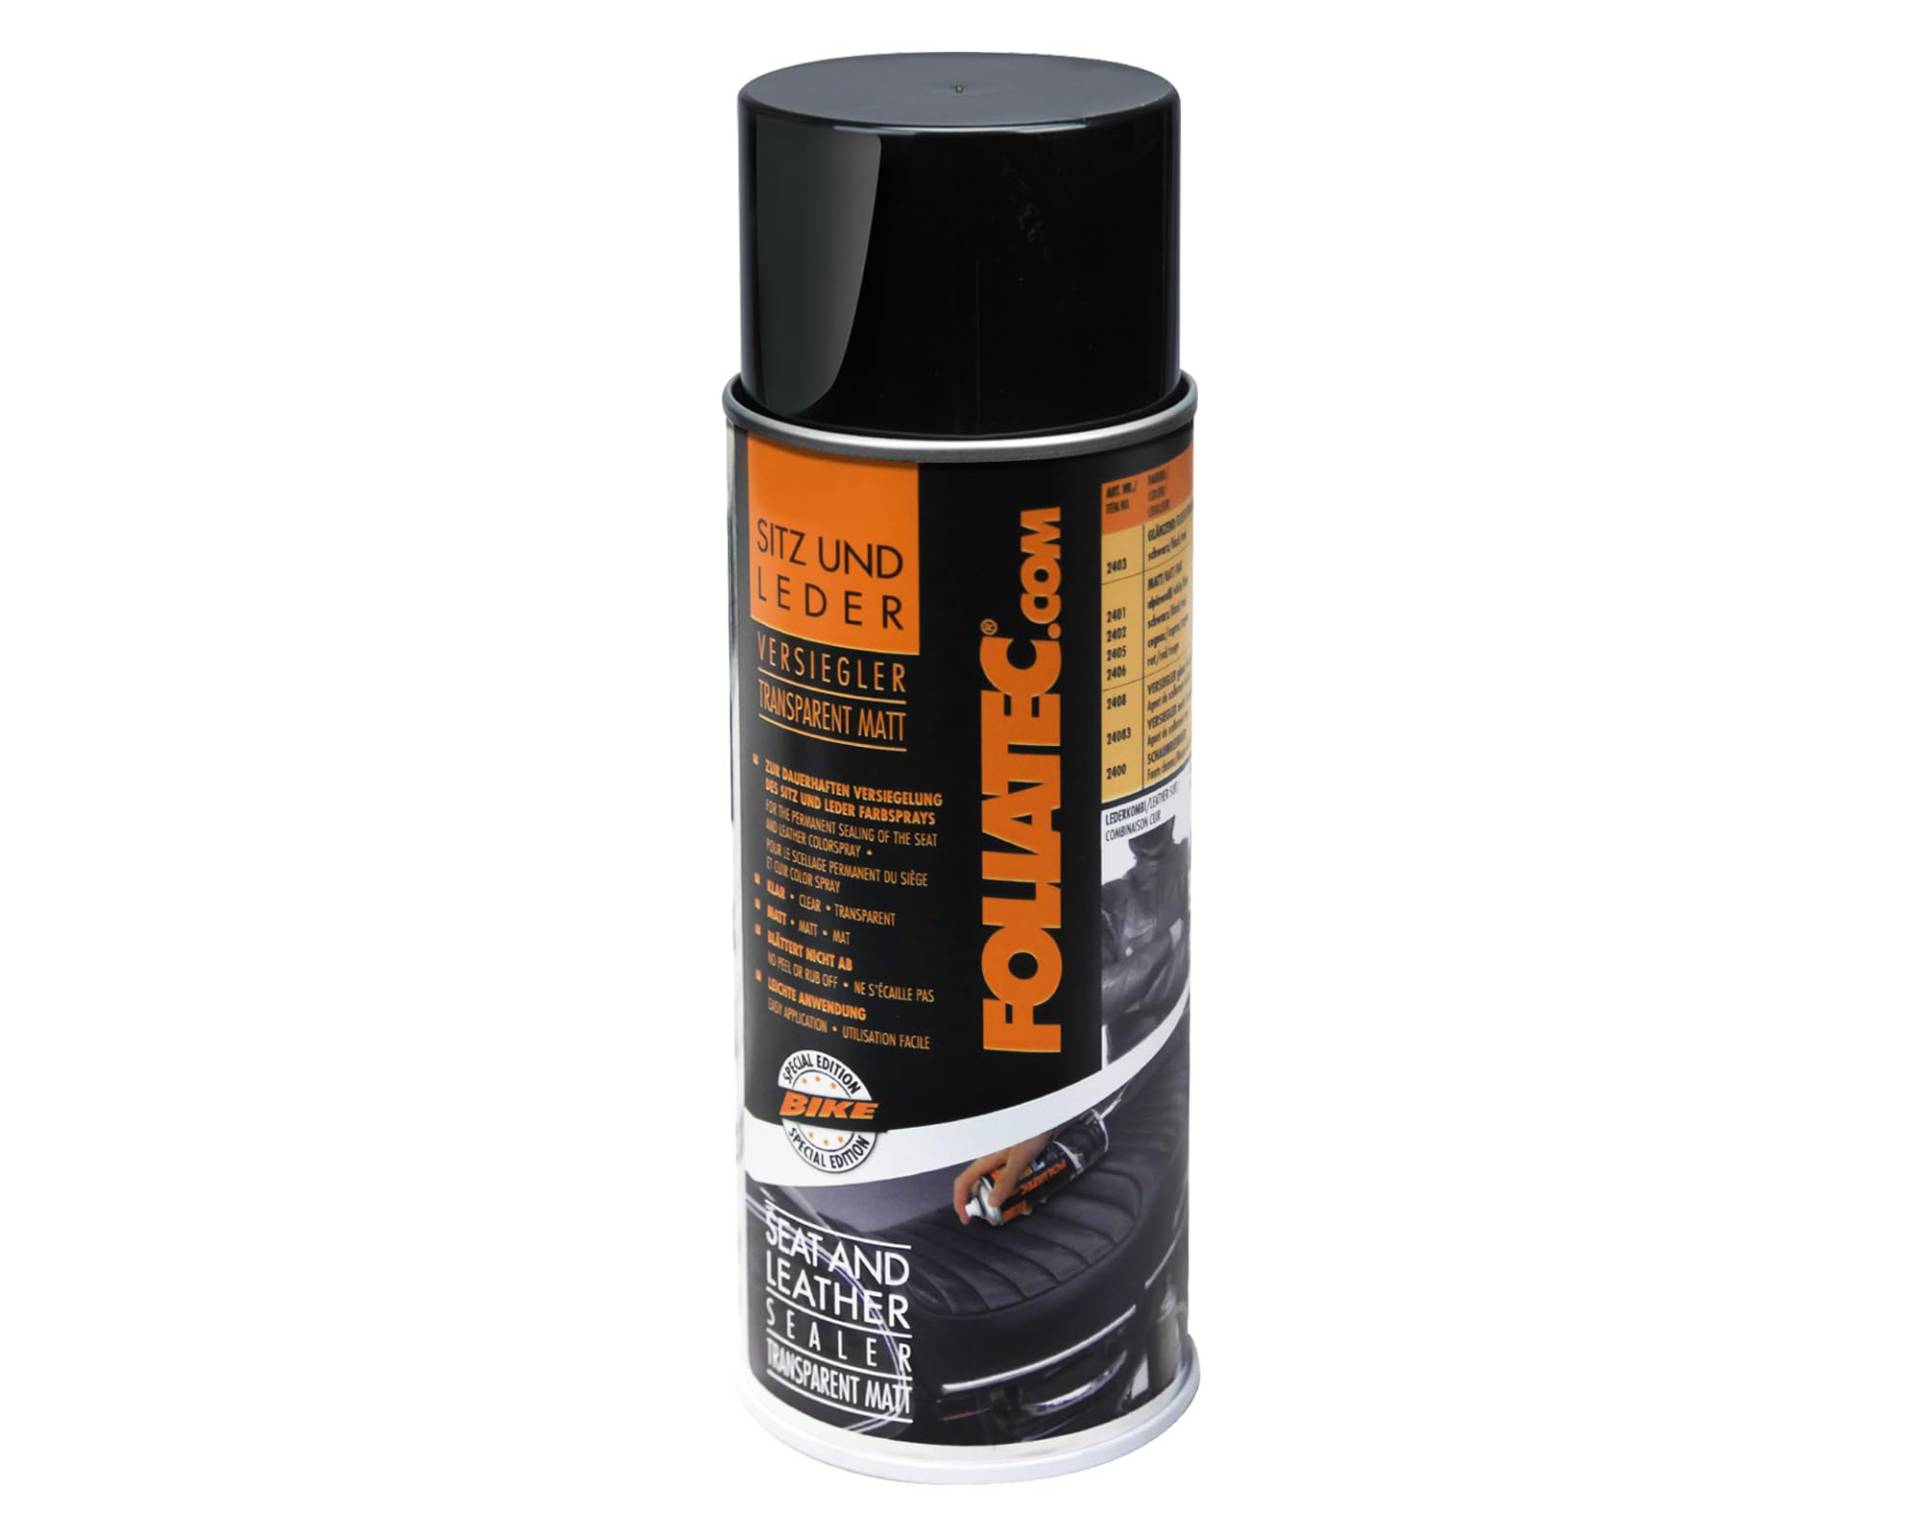 Foliatec Sitz und Leder Farbspray Versiegler Spray, Transparent Matt, 400 ml von Foliatec